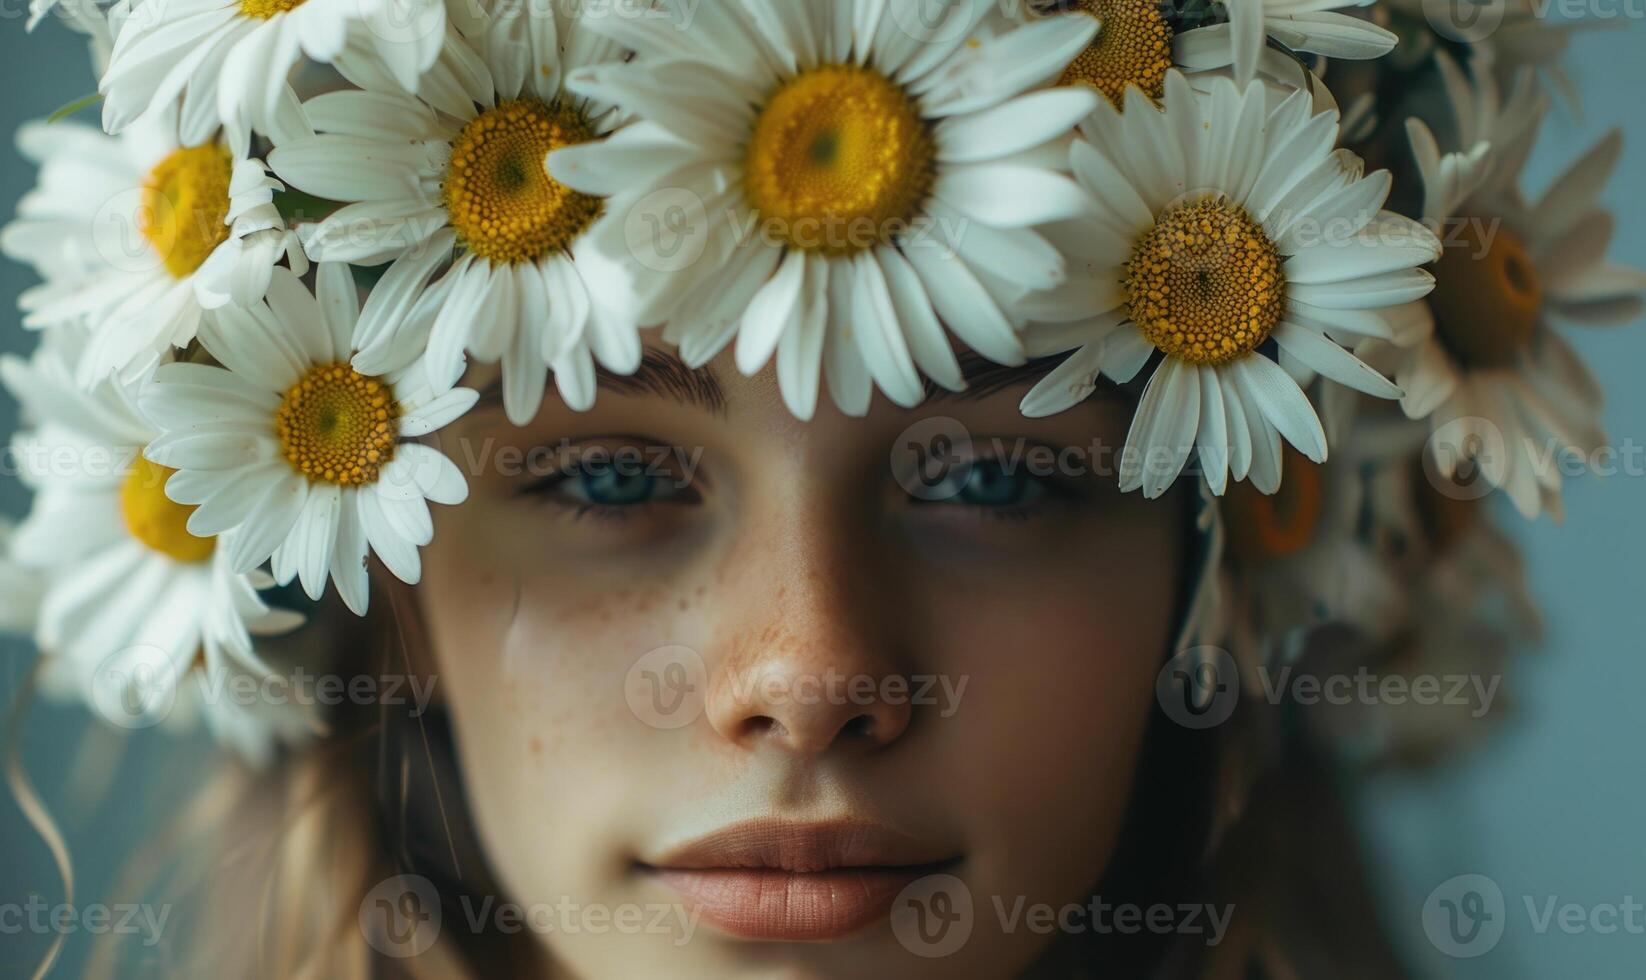 margaritas arreglado en un floral corona, joven mujer en floral corona, naturaleza belleza foto